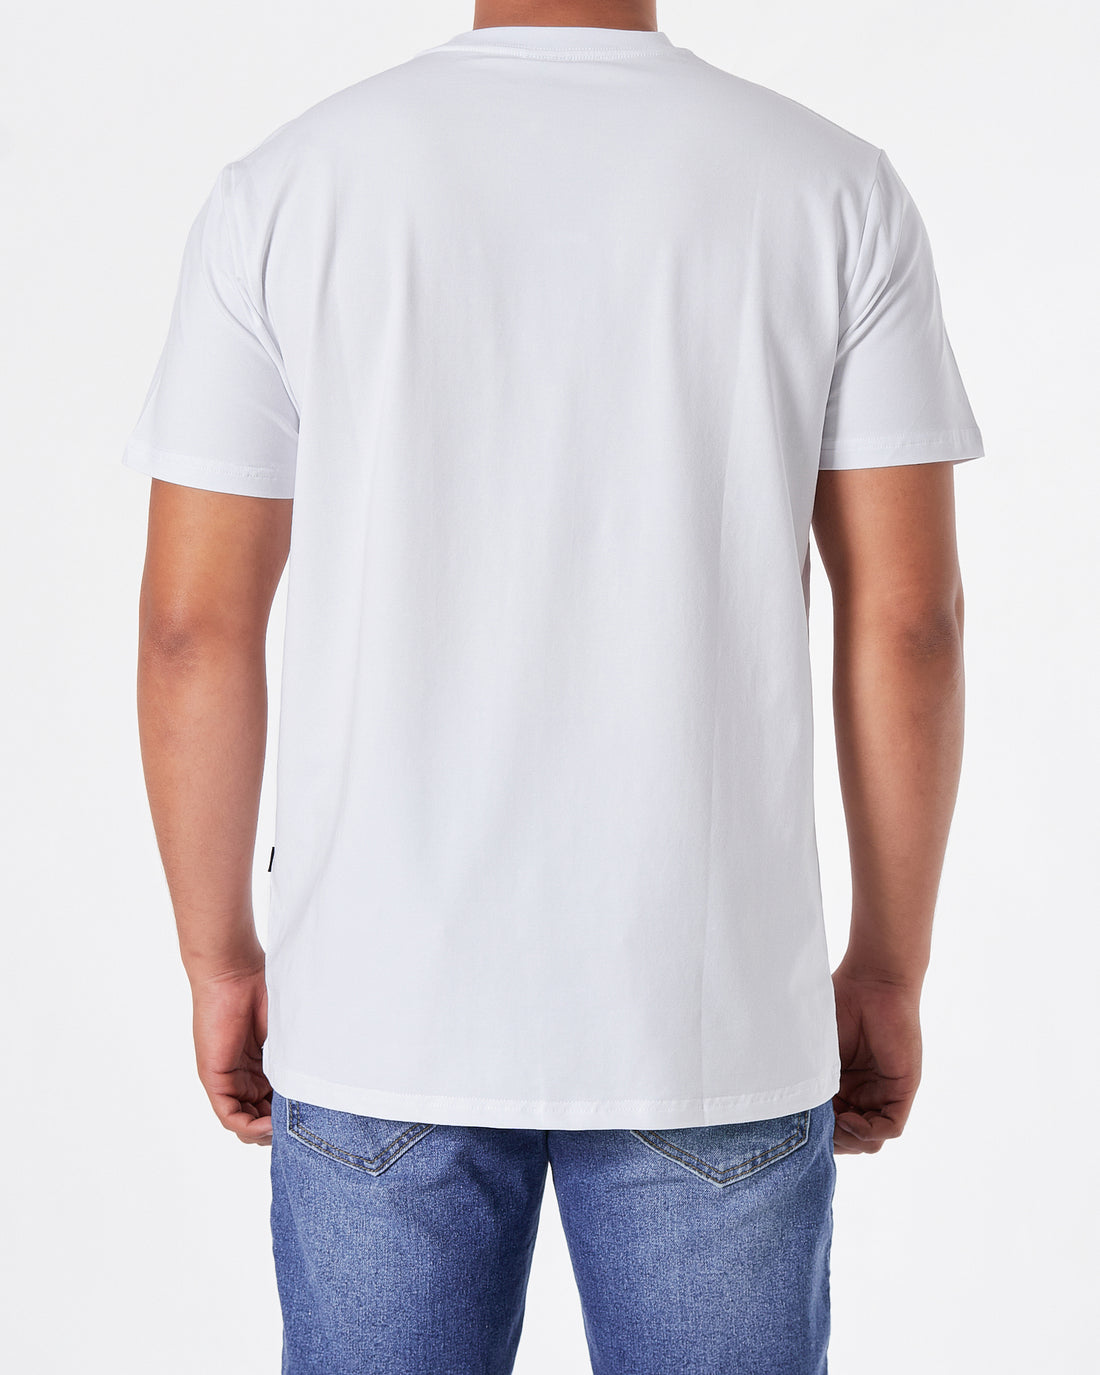 HUG Logo Printed Men White T-Shirt 16.90